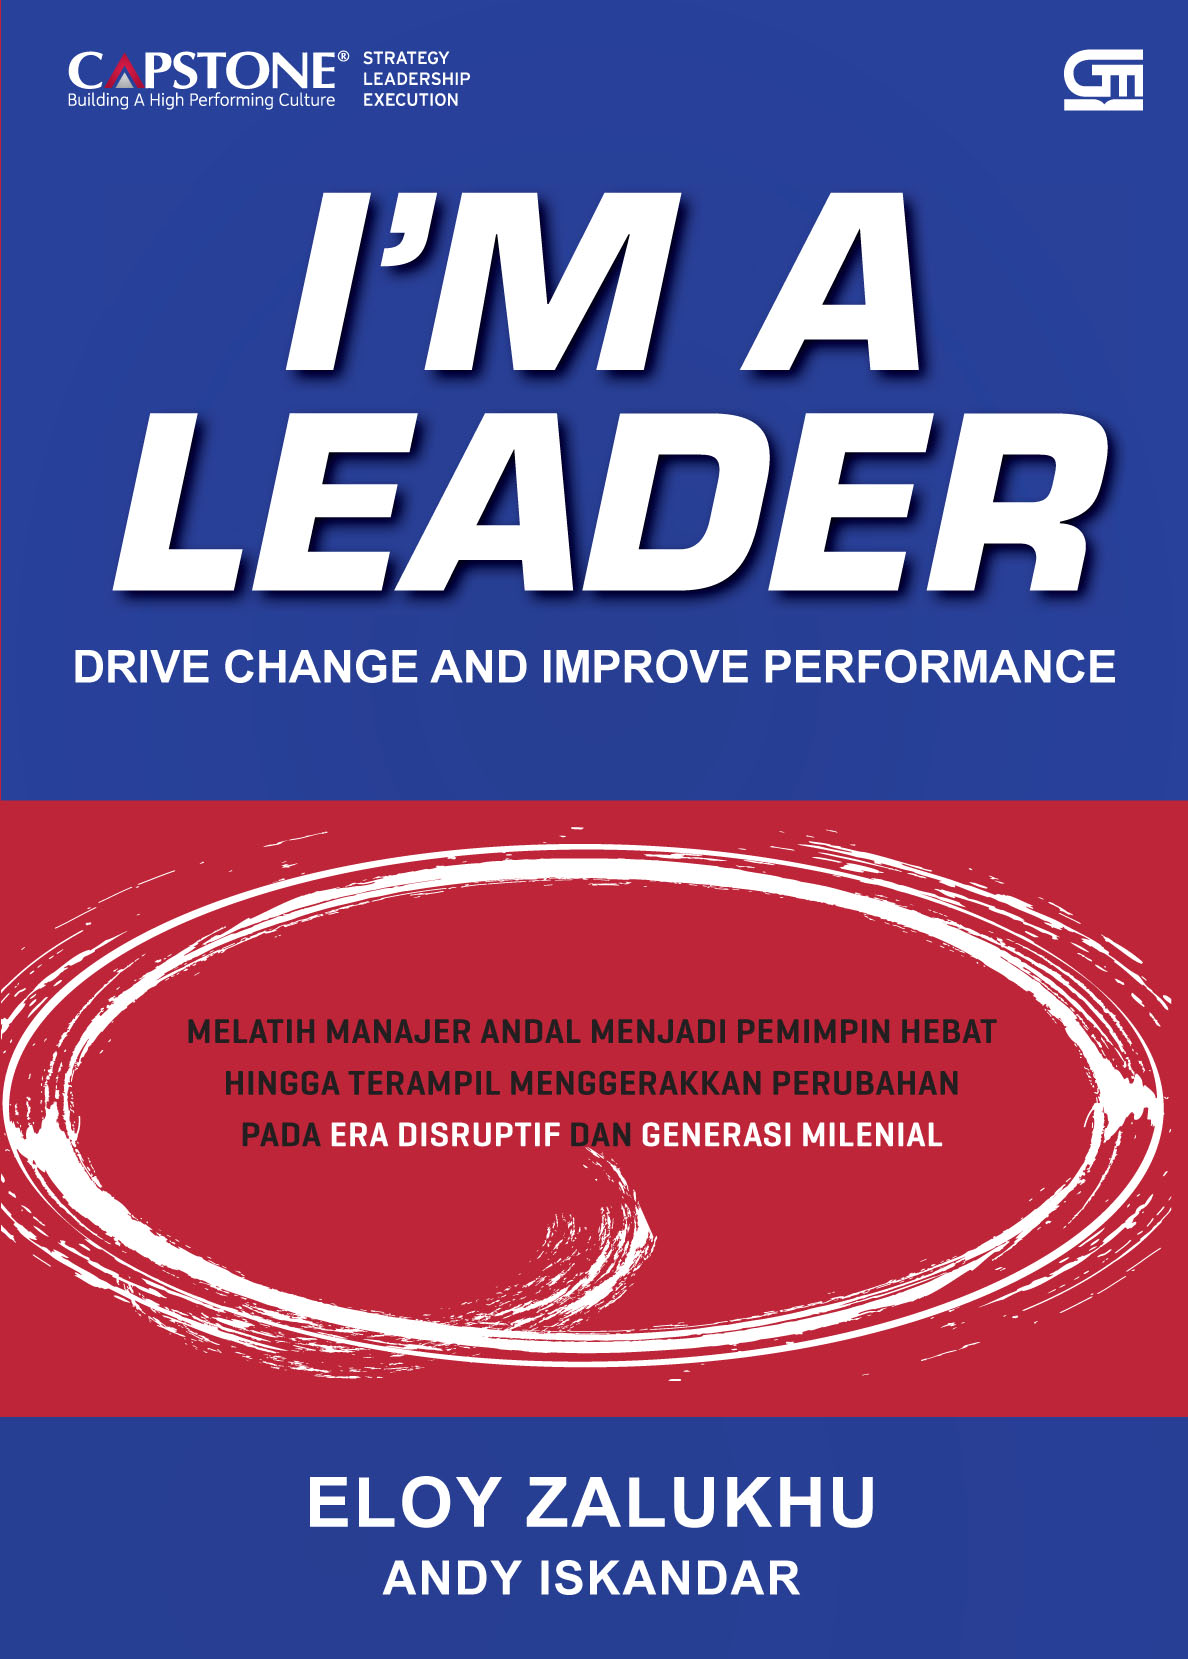 I’M A LEADER: Melatih Manajer Andal Menjadi Pemimpin Hebat dan Terampil dalam Menggerakkan Perubahan Pada Era Disruptif dan Gene